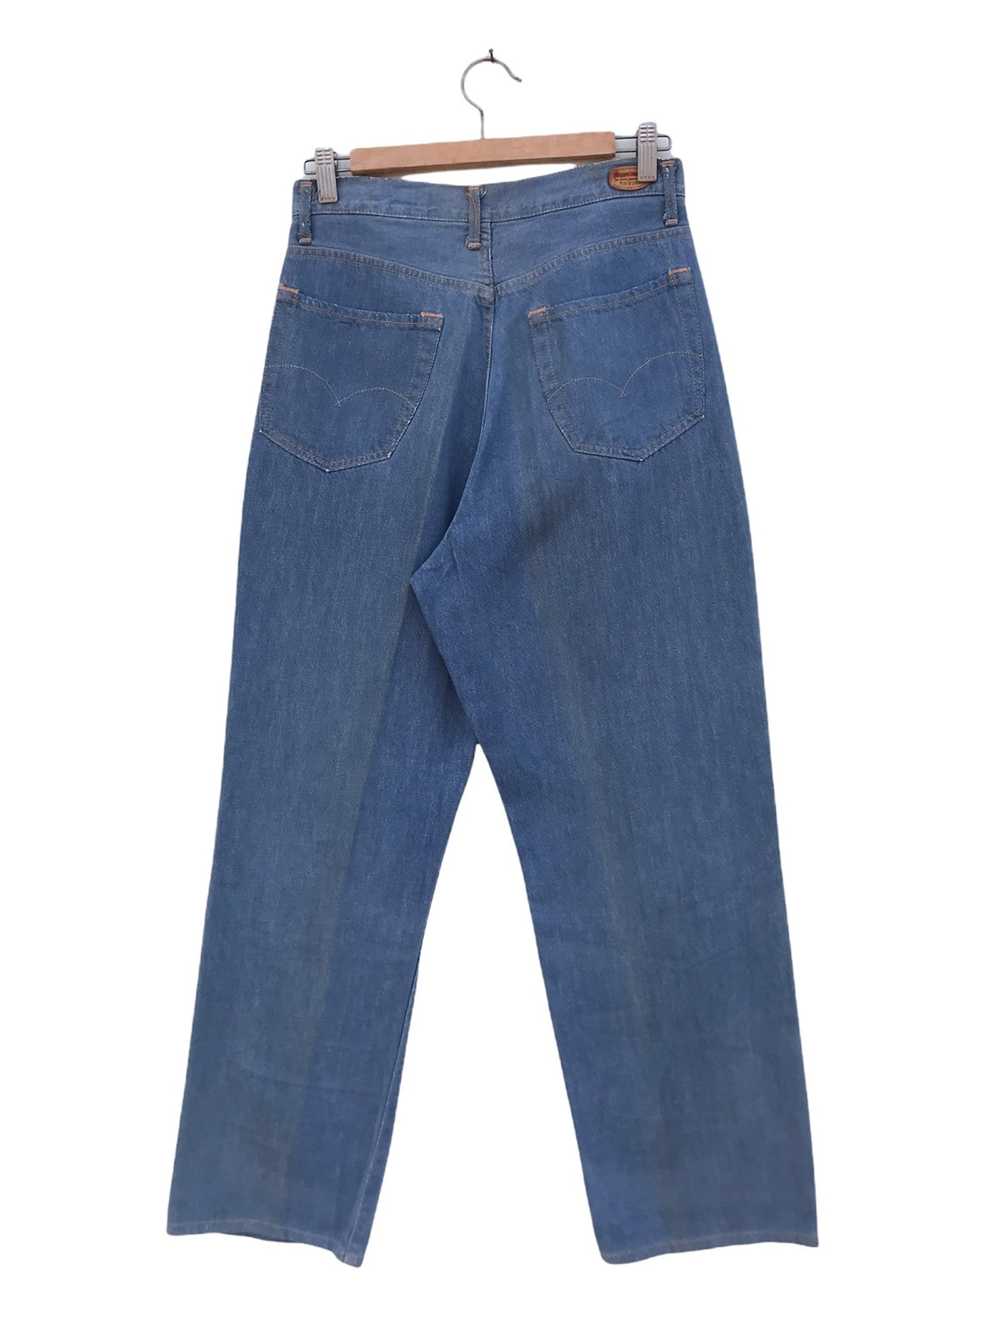 45rpm × Vintage Vintage 45RPM Jeans - image 2